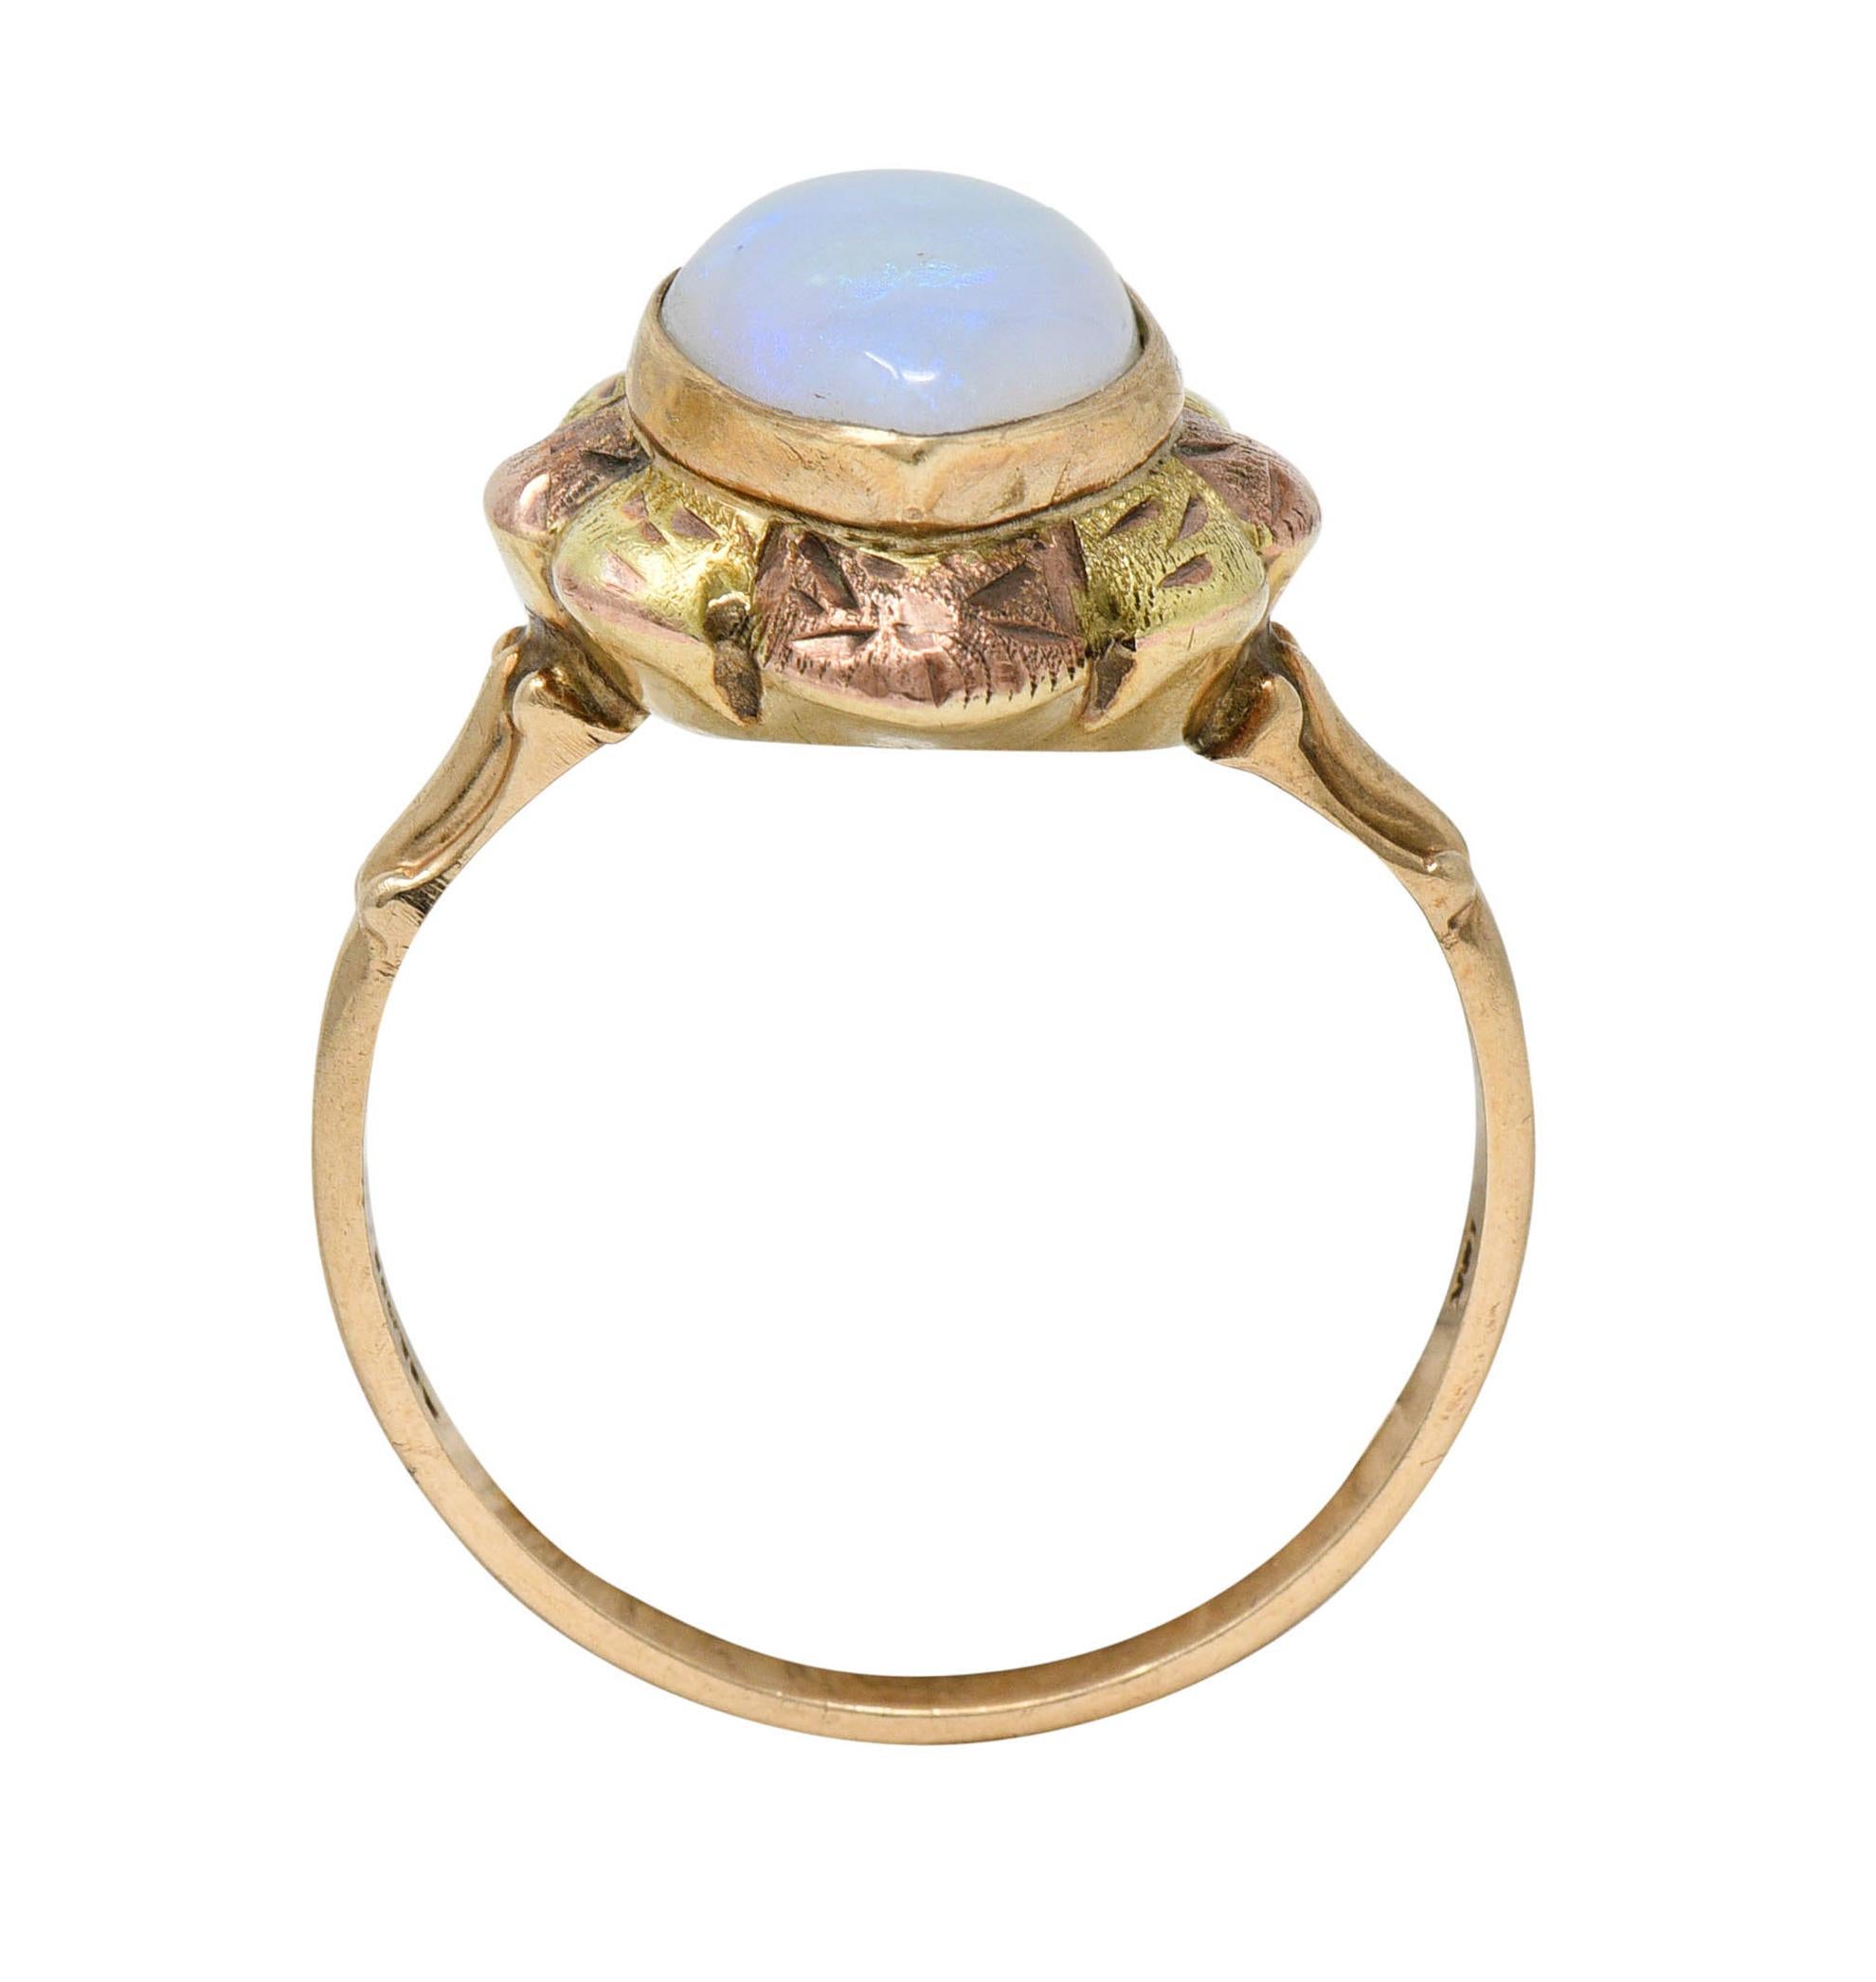 Esemco Vintage Victorian Revival Opal Tri-Colored 10 Karat Gold Navette Ring 2